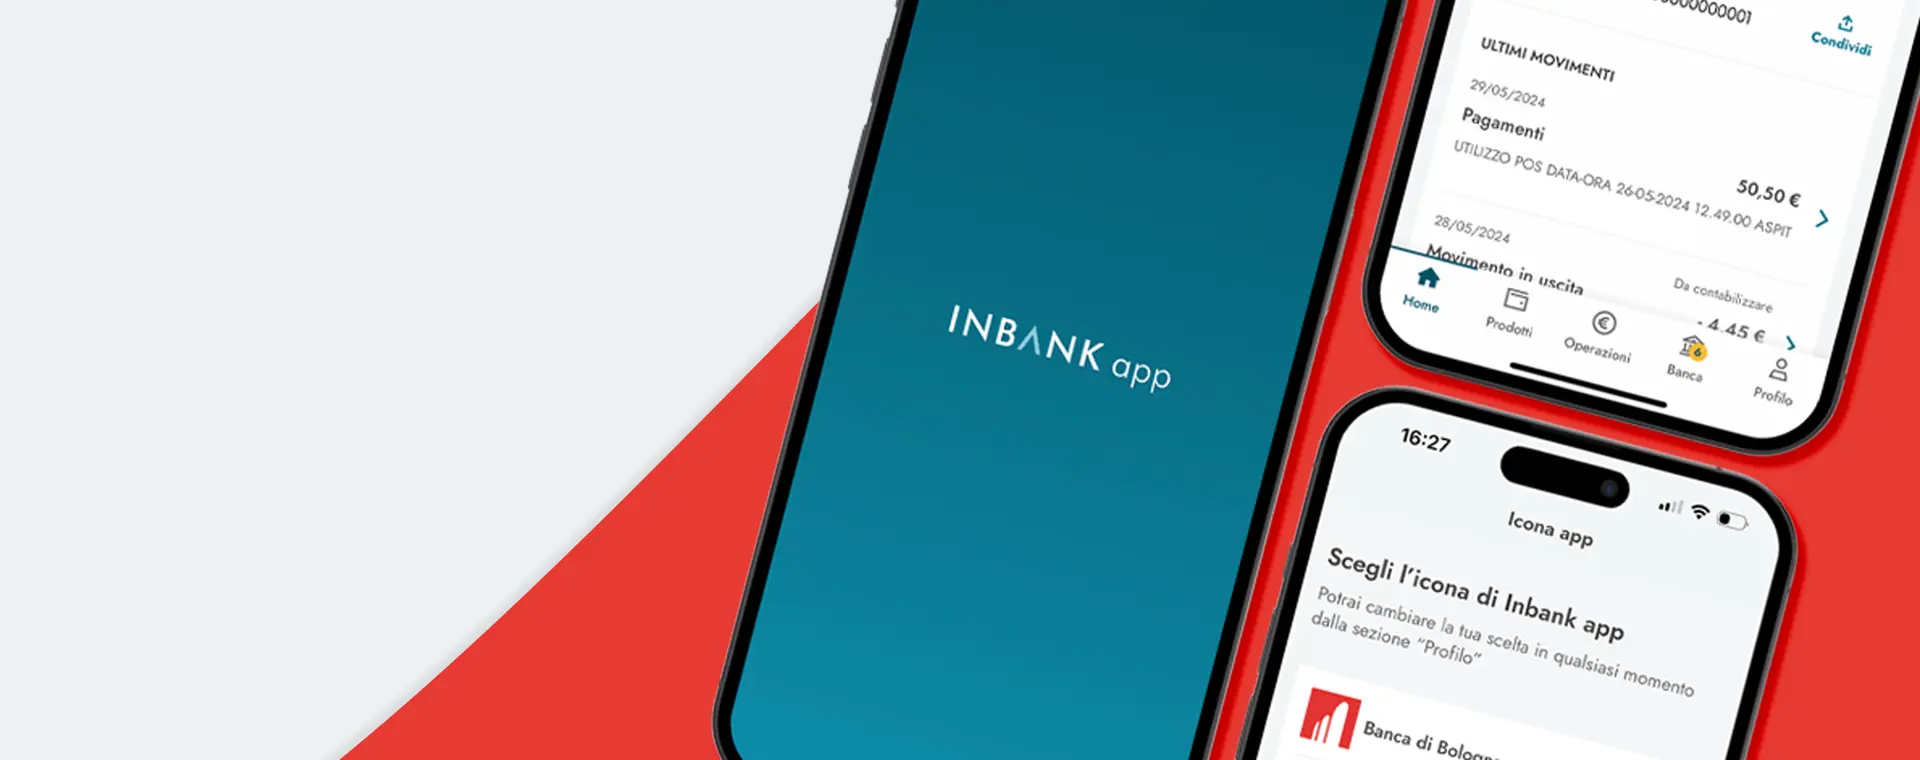 È disponibile la nuova app INBANK, che sostituirà l’attuale app d